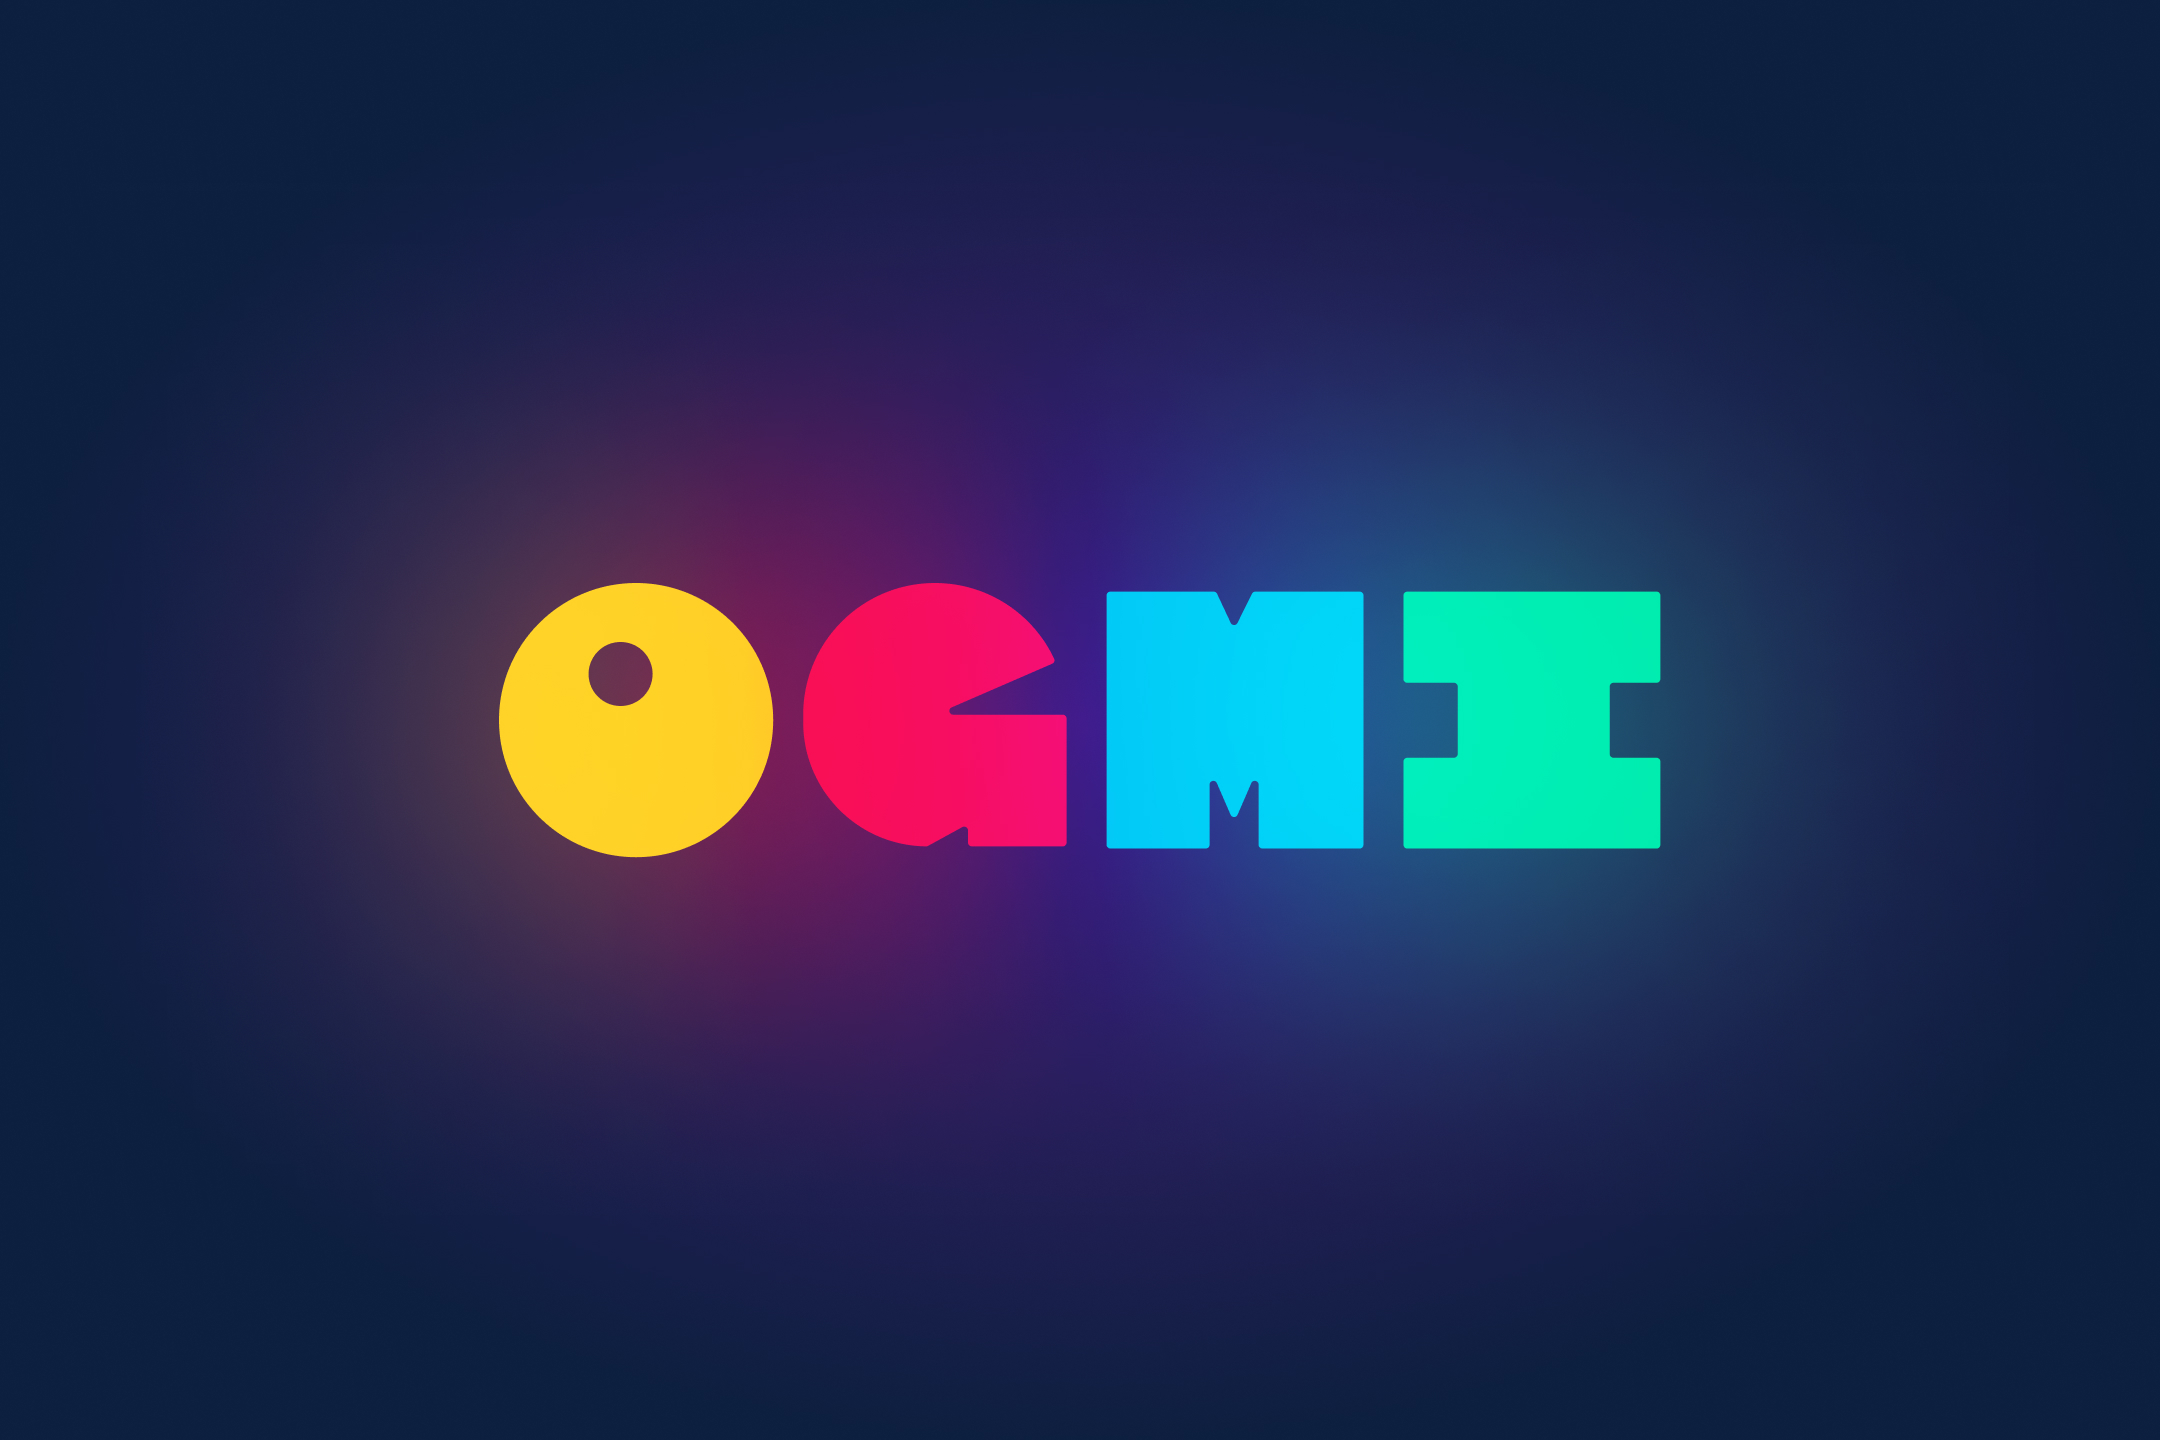 Ogmi logo